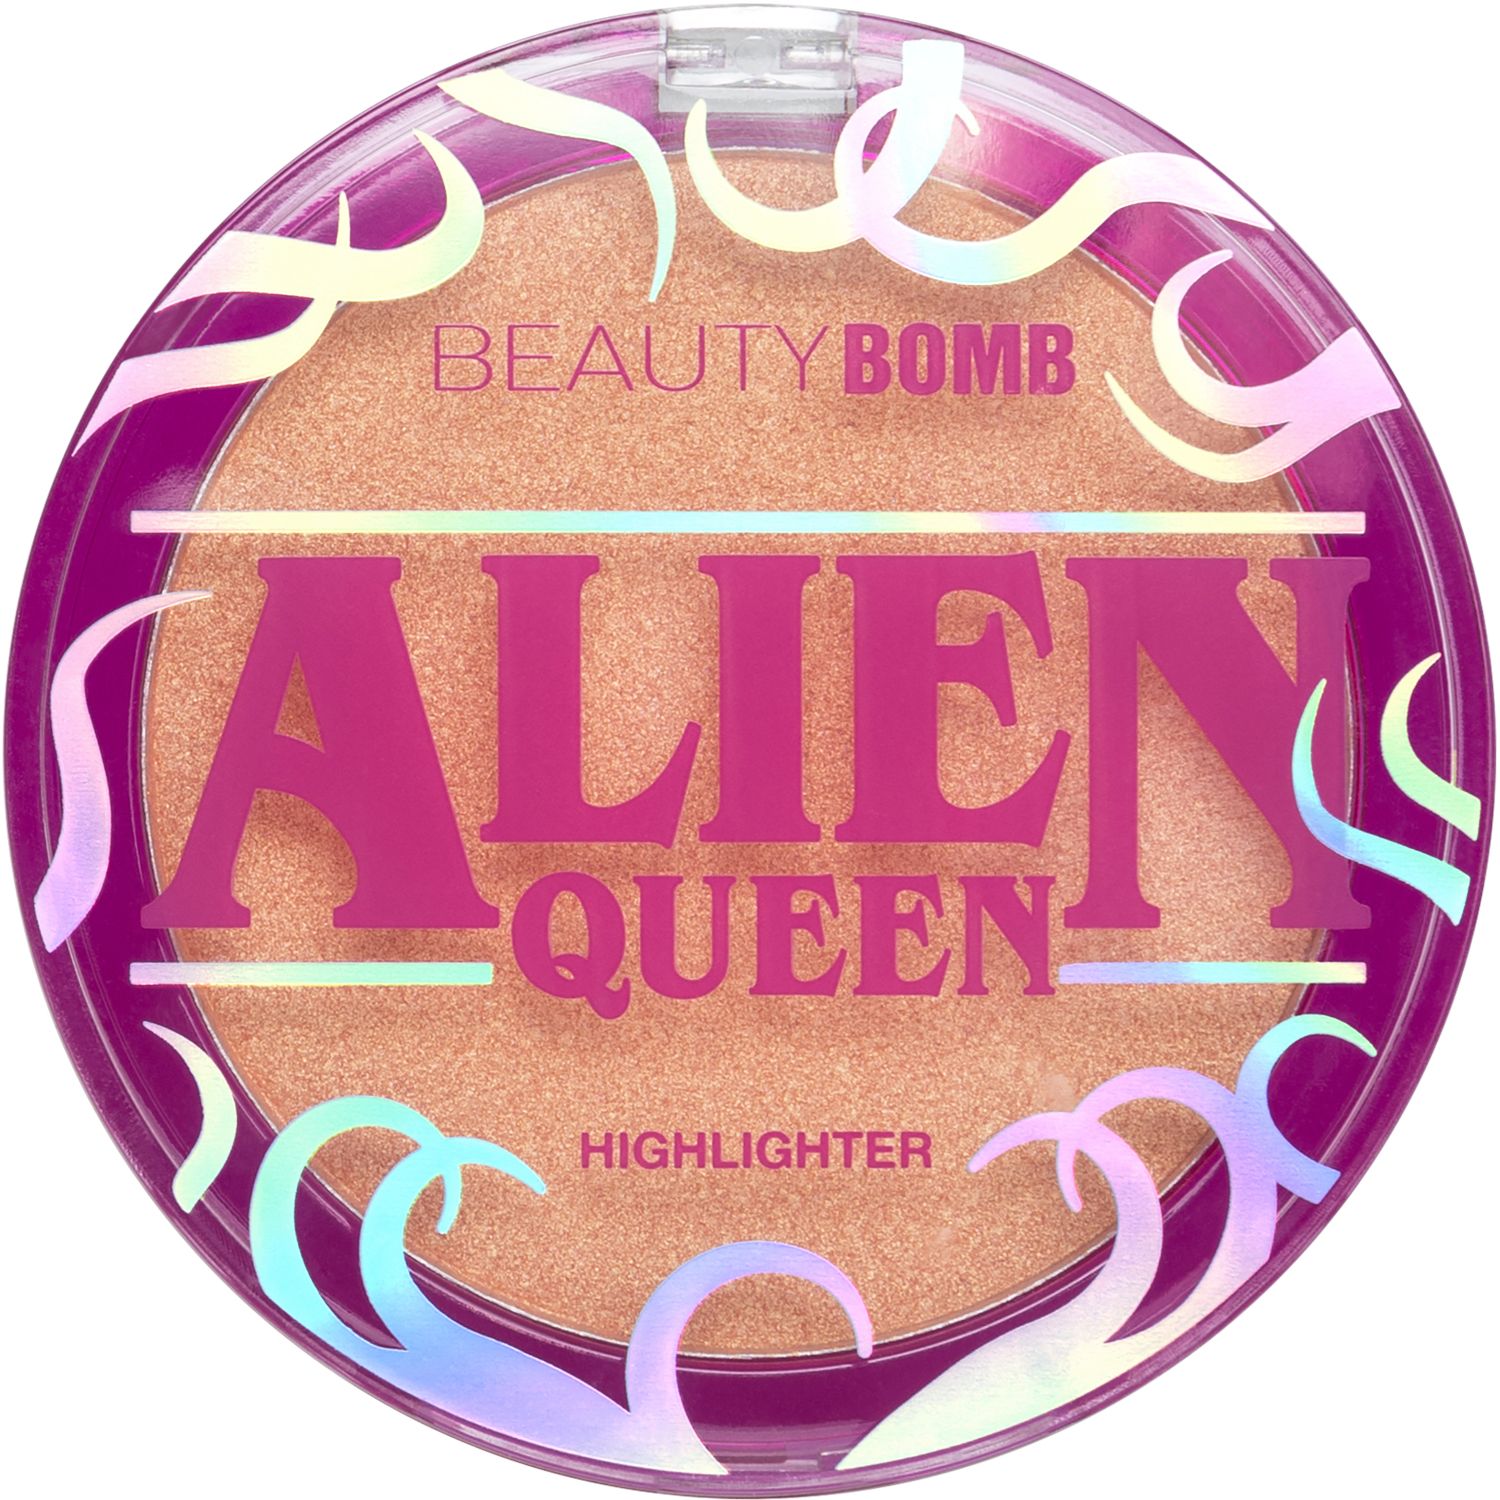 Хайлайтер Beauty Bomb Alien Queen  с золотистым сиянием, персиковый, №01, 6 г декоративные наклейки жемчуг 0 5 см 105 шт персиковый